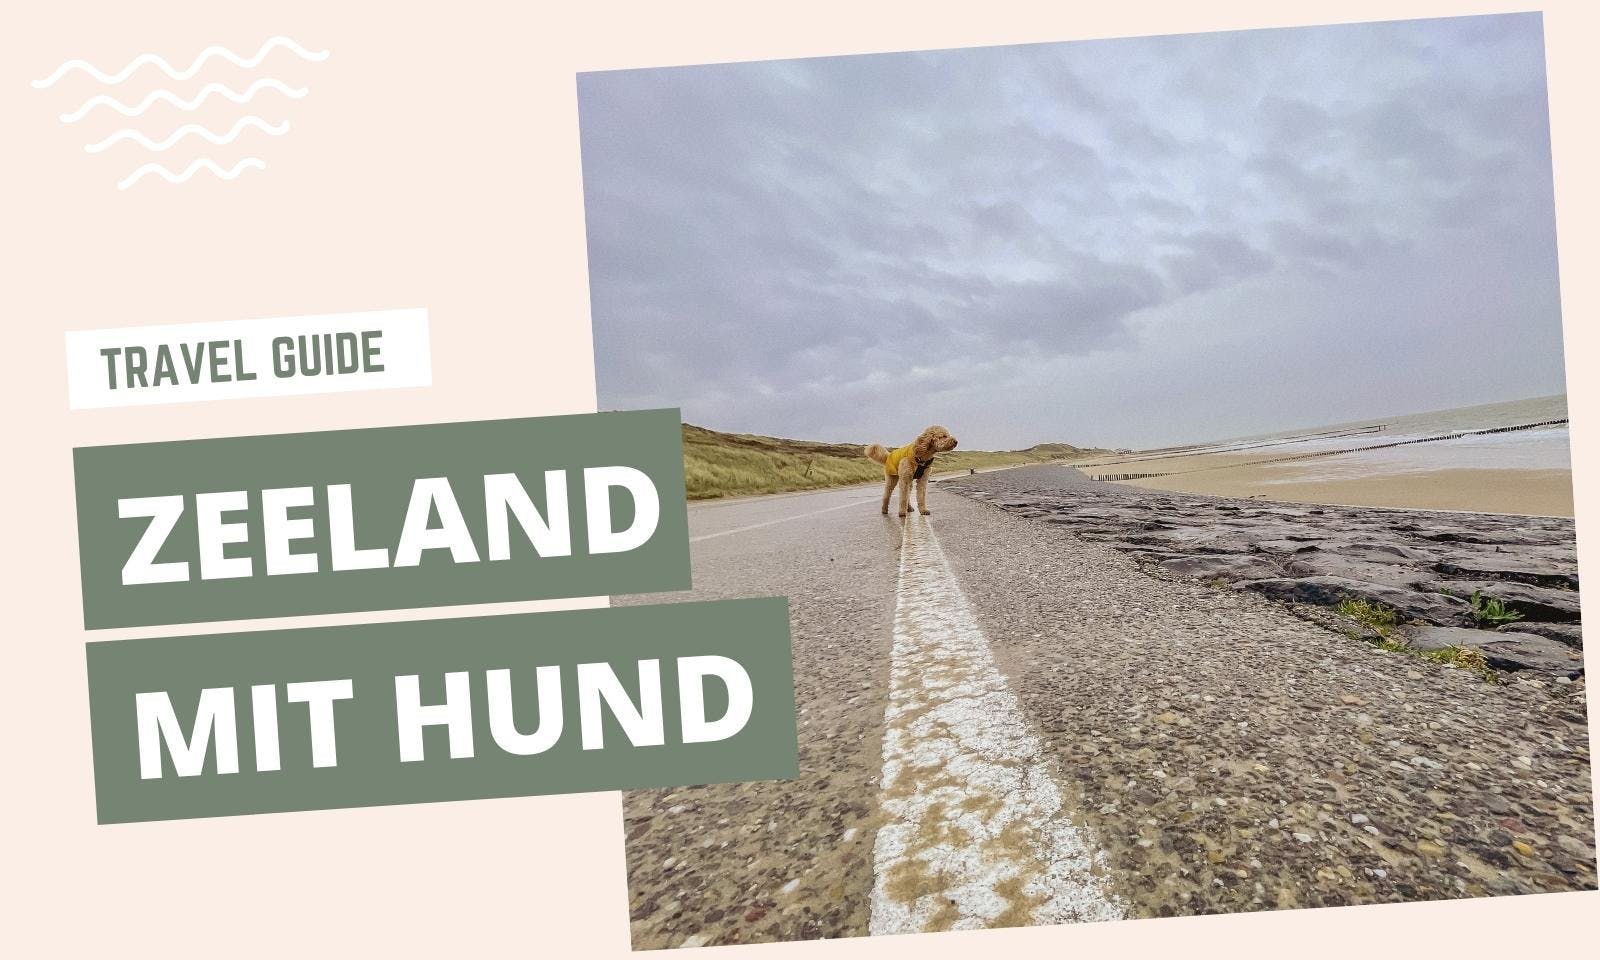 Travel Guide Zeeland mit Hund